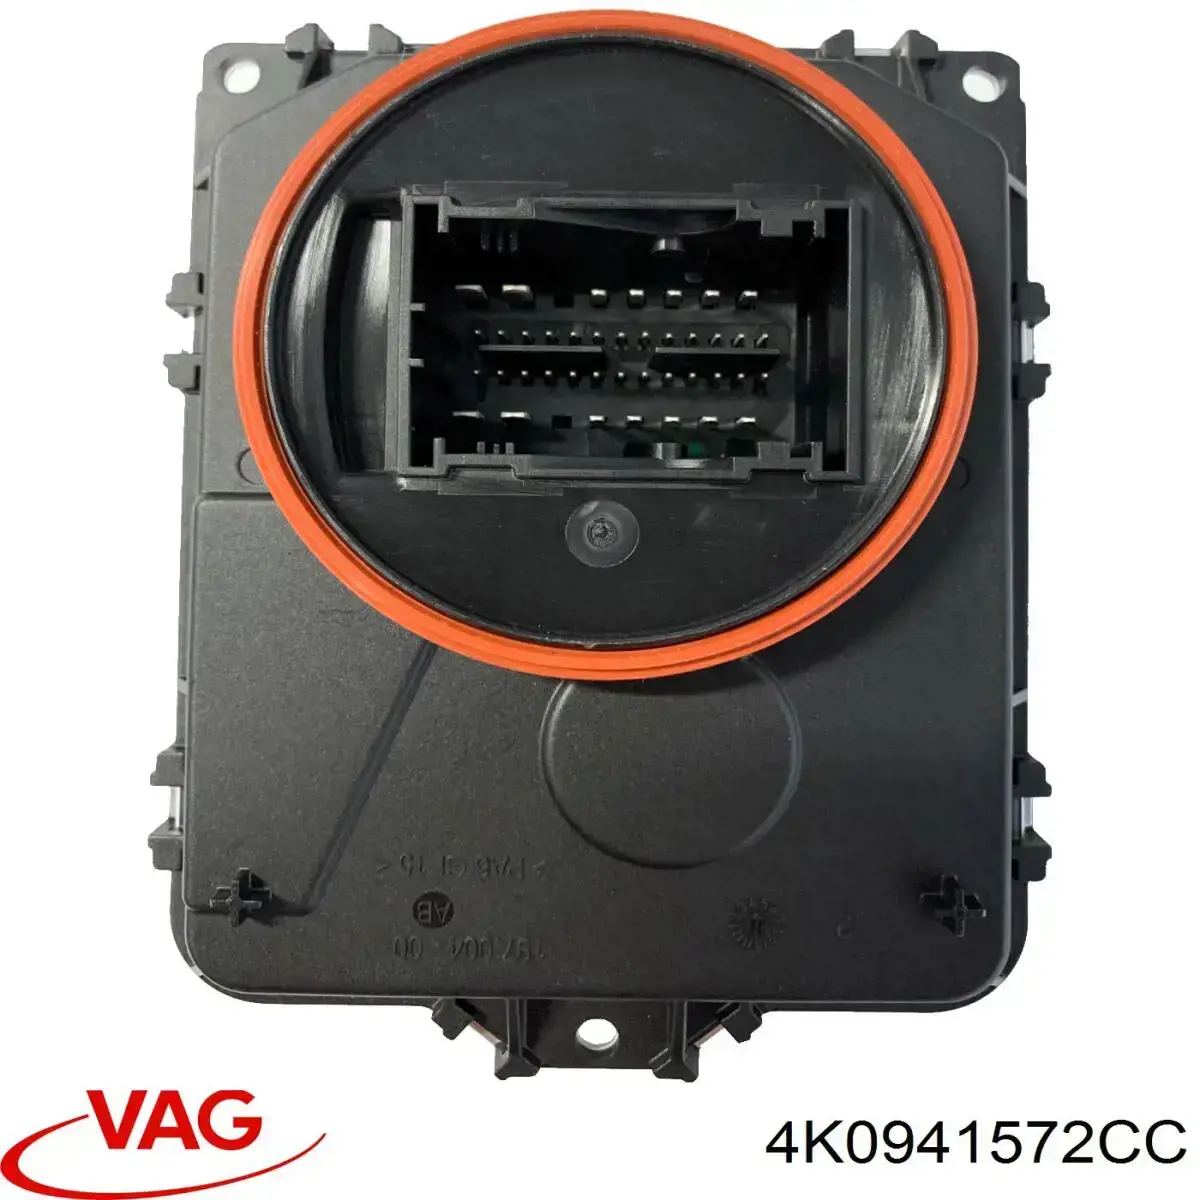 4K0941572CC VAG modulo de control de faros (ecu)